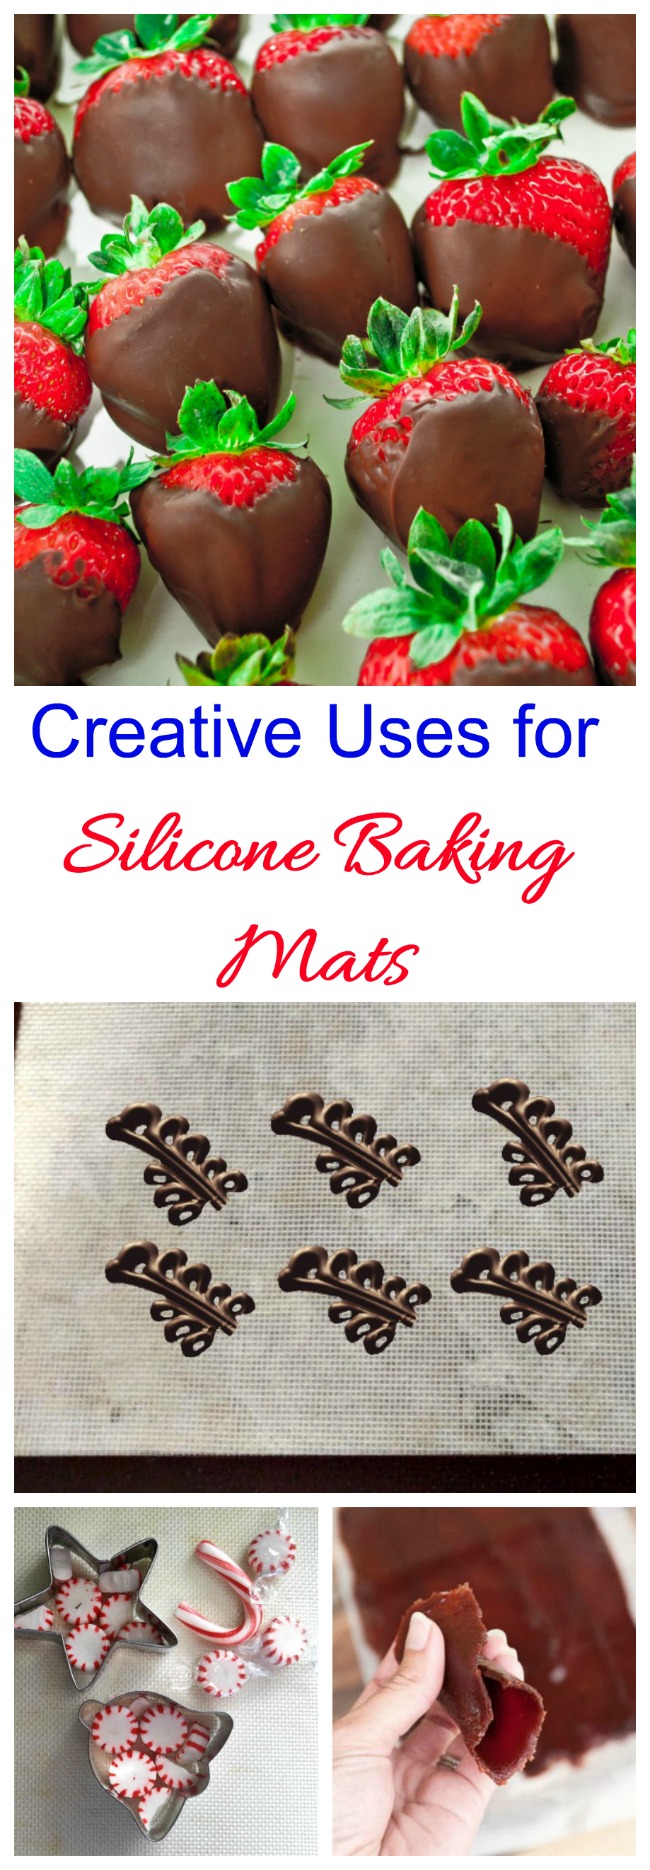 Uzoj de Silicon Baking Mat - Konsiloj por Uzado de Silpat Baking Mats